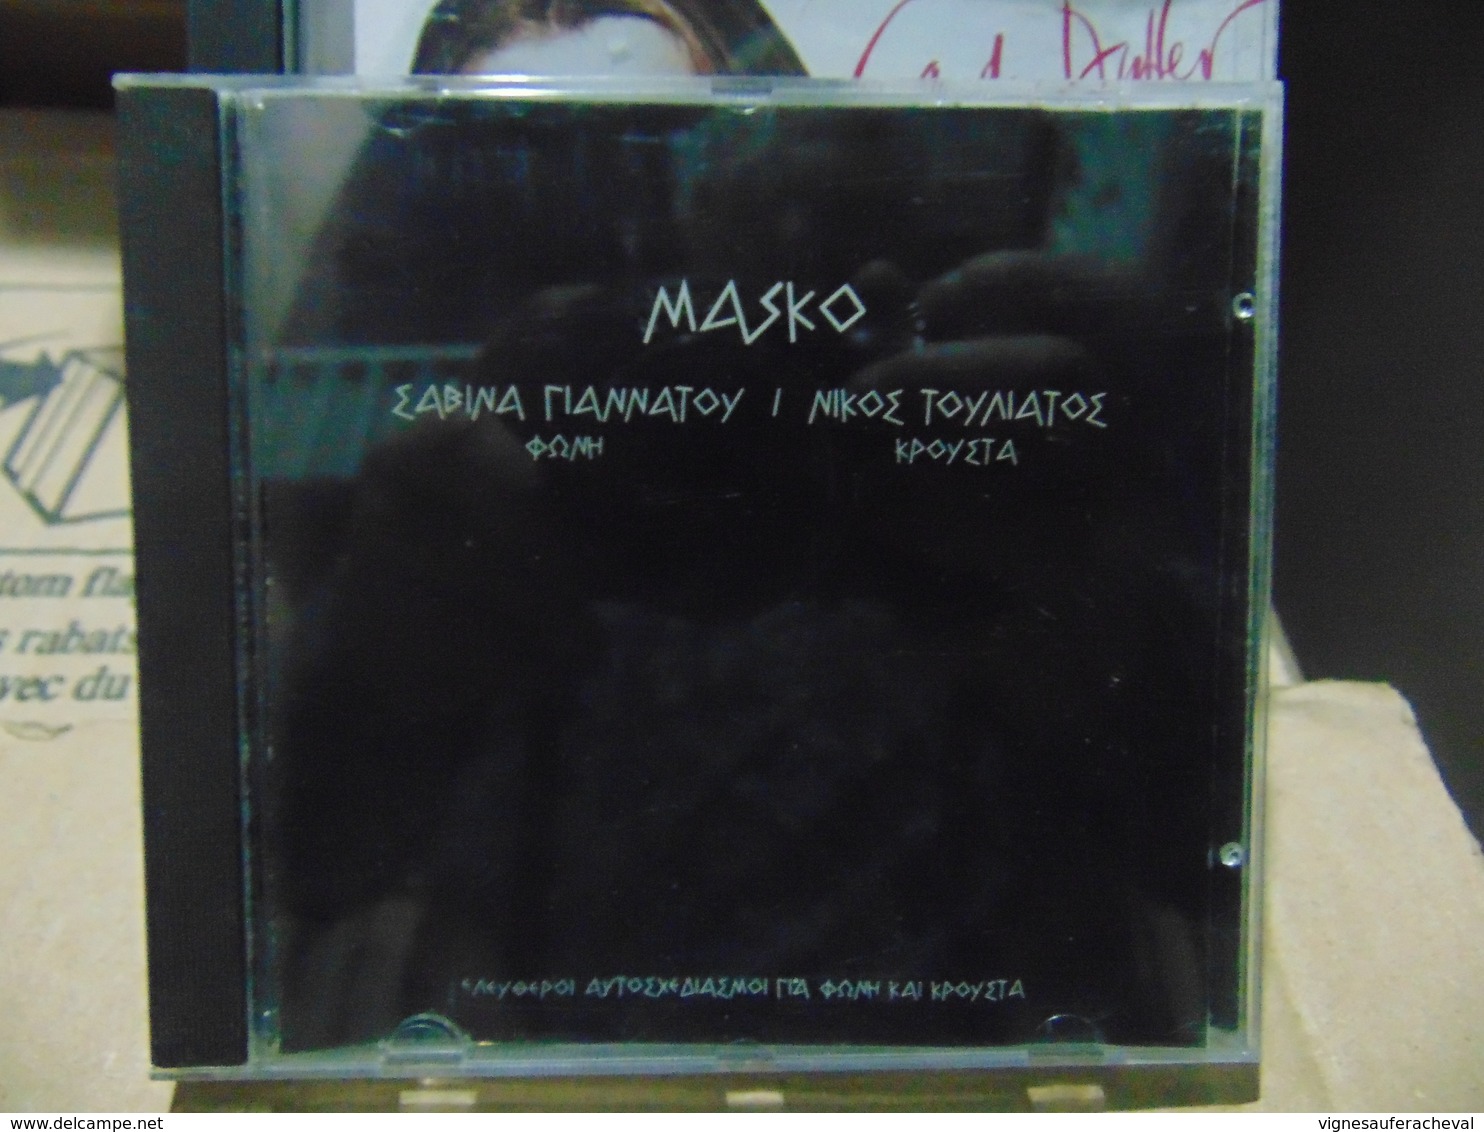 Masko-nikoe & Sabina - Wereldmuziek